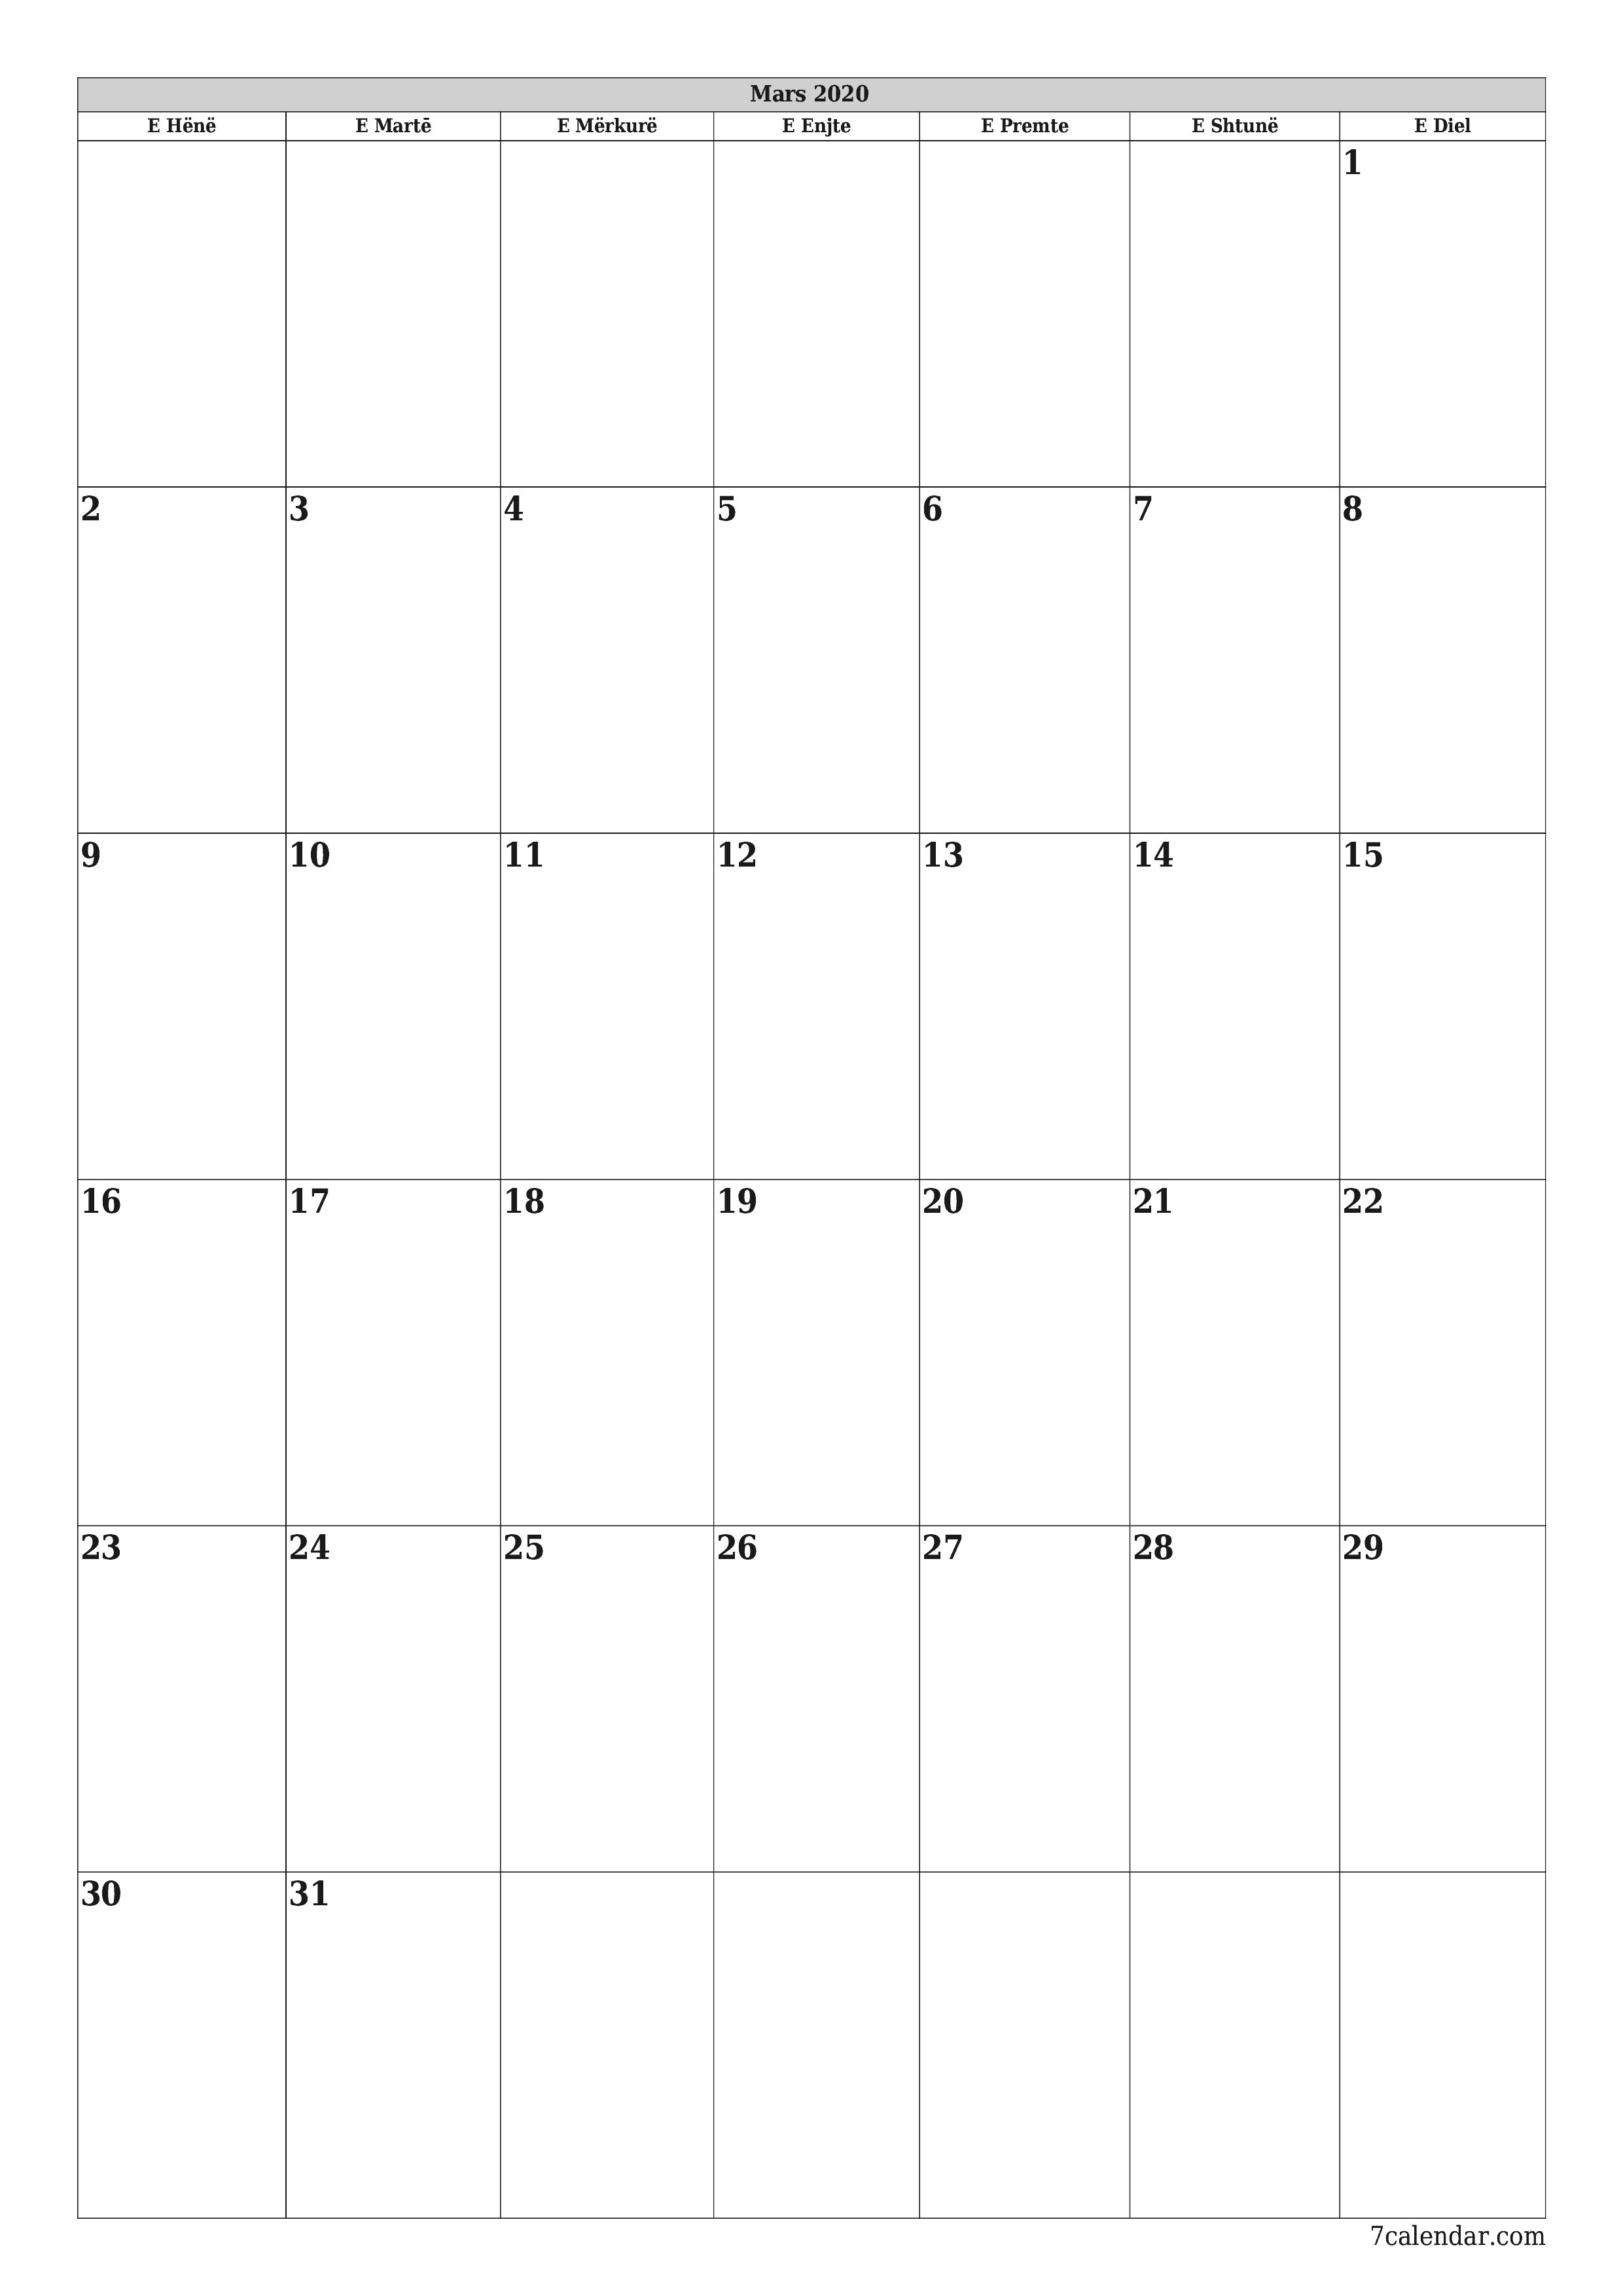 Planifikuesi i zbrazët i kalendarit mujor për muajin Mars 2020 me shënime të ruajtura dhe të printuara në PDF PNG Albanian